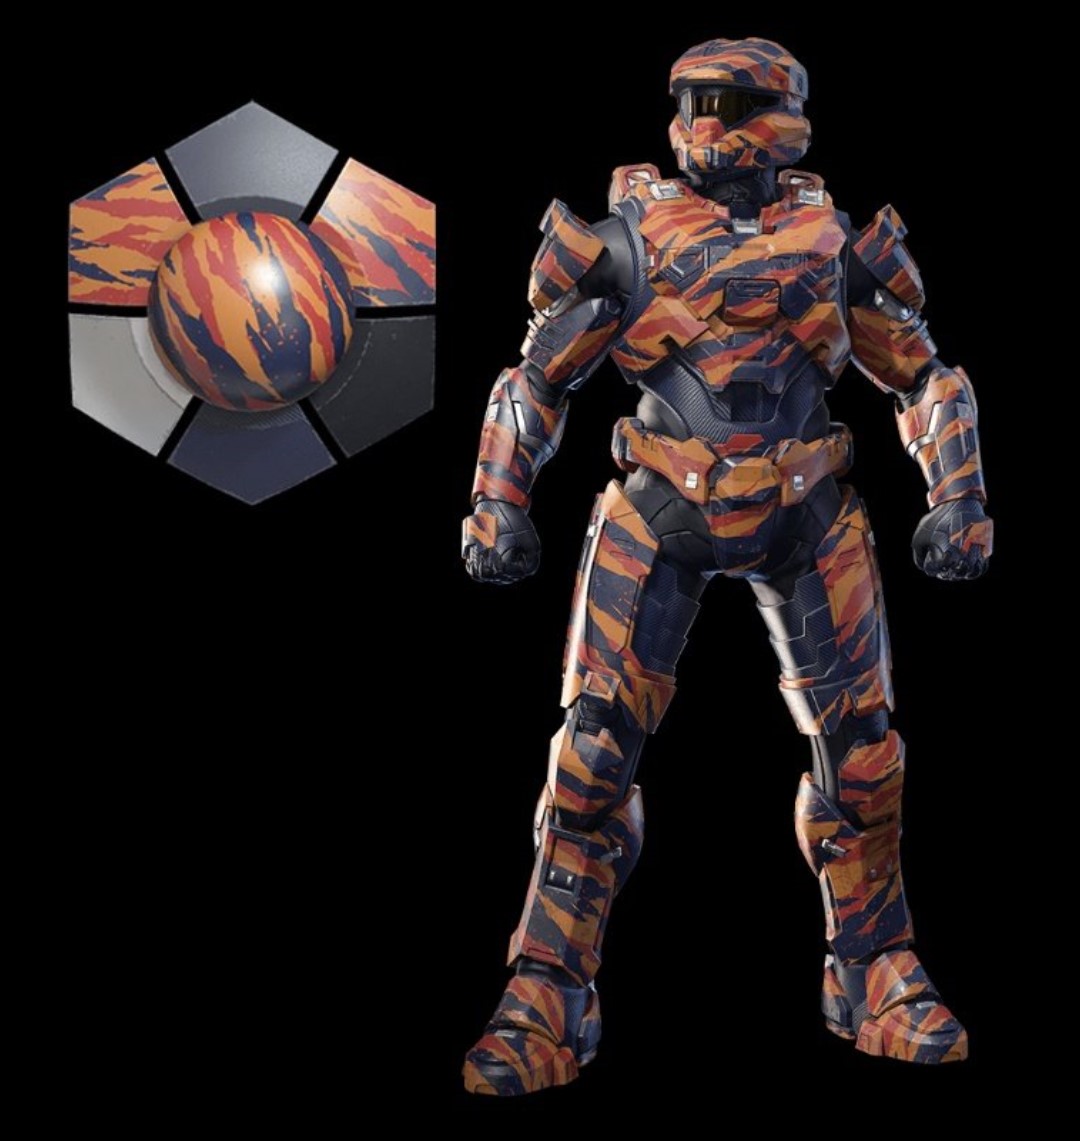 Halo Infinite - Pass Tense Mountain Tiger Armor Coating DLC XBOX One / Xbox Series X,S / Windows 10 CD Key